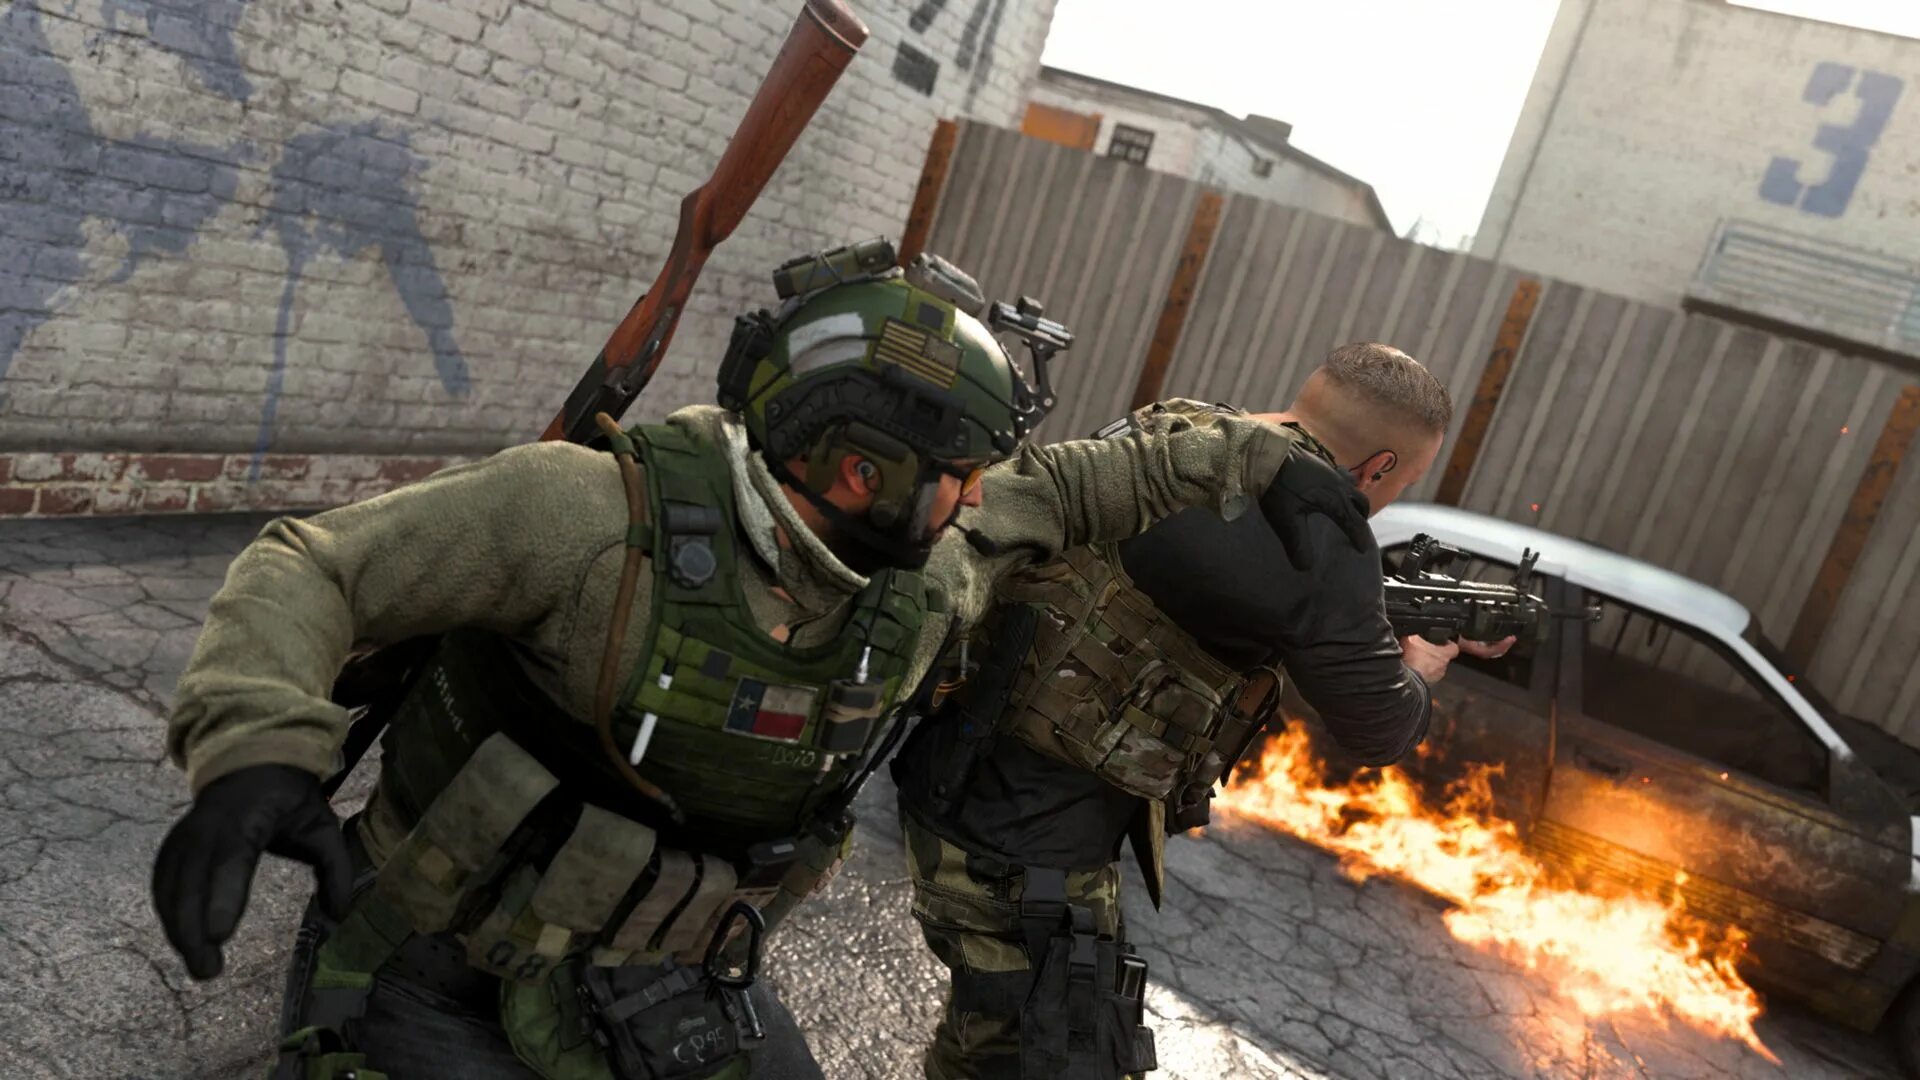 Бесплатная версия call of duty warzone. Ж-12 Call of Duty Modern Warfare. Варзон Call of Duty. Call of Duty Modern Warfare 2 Warzone. СФБ Call of Duty.